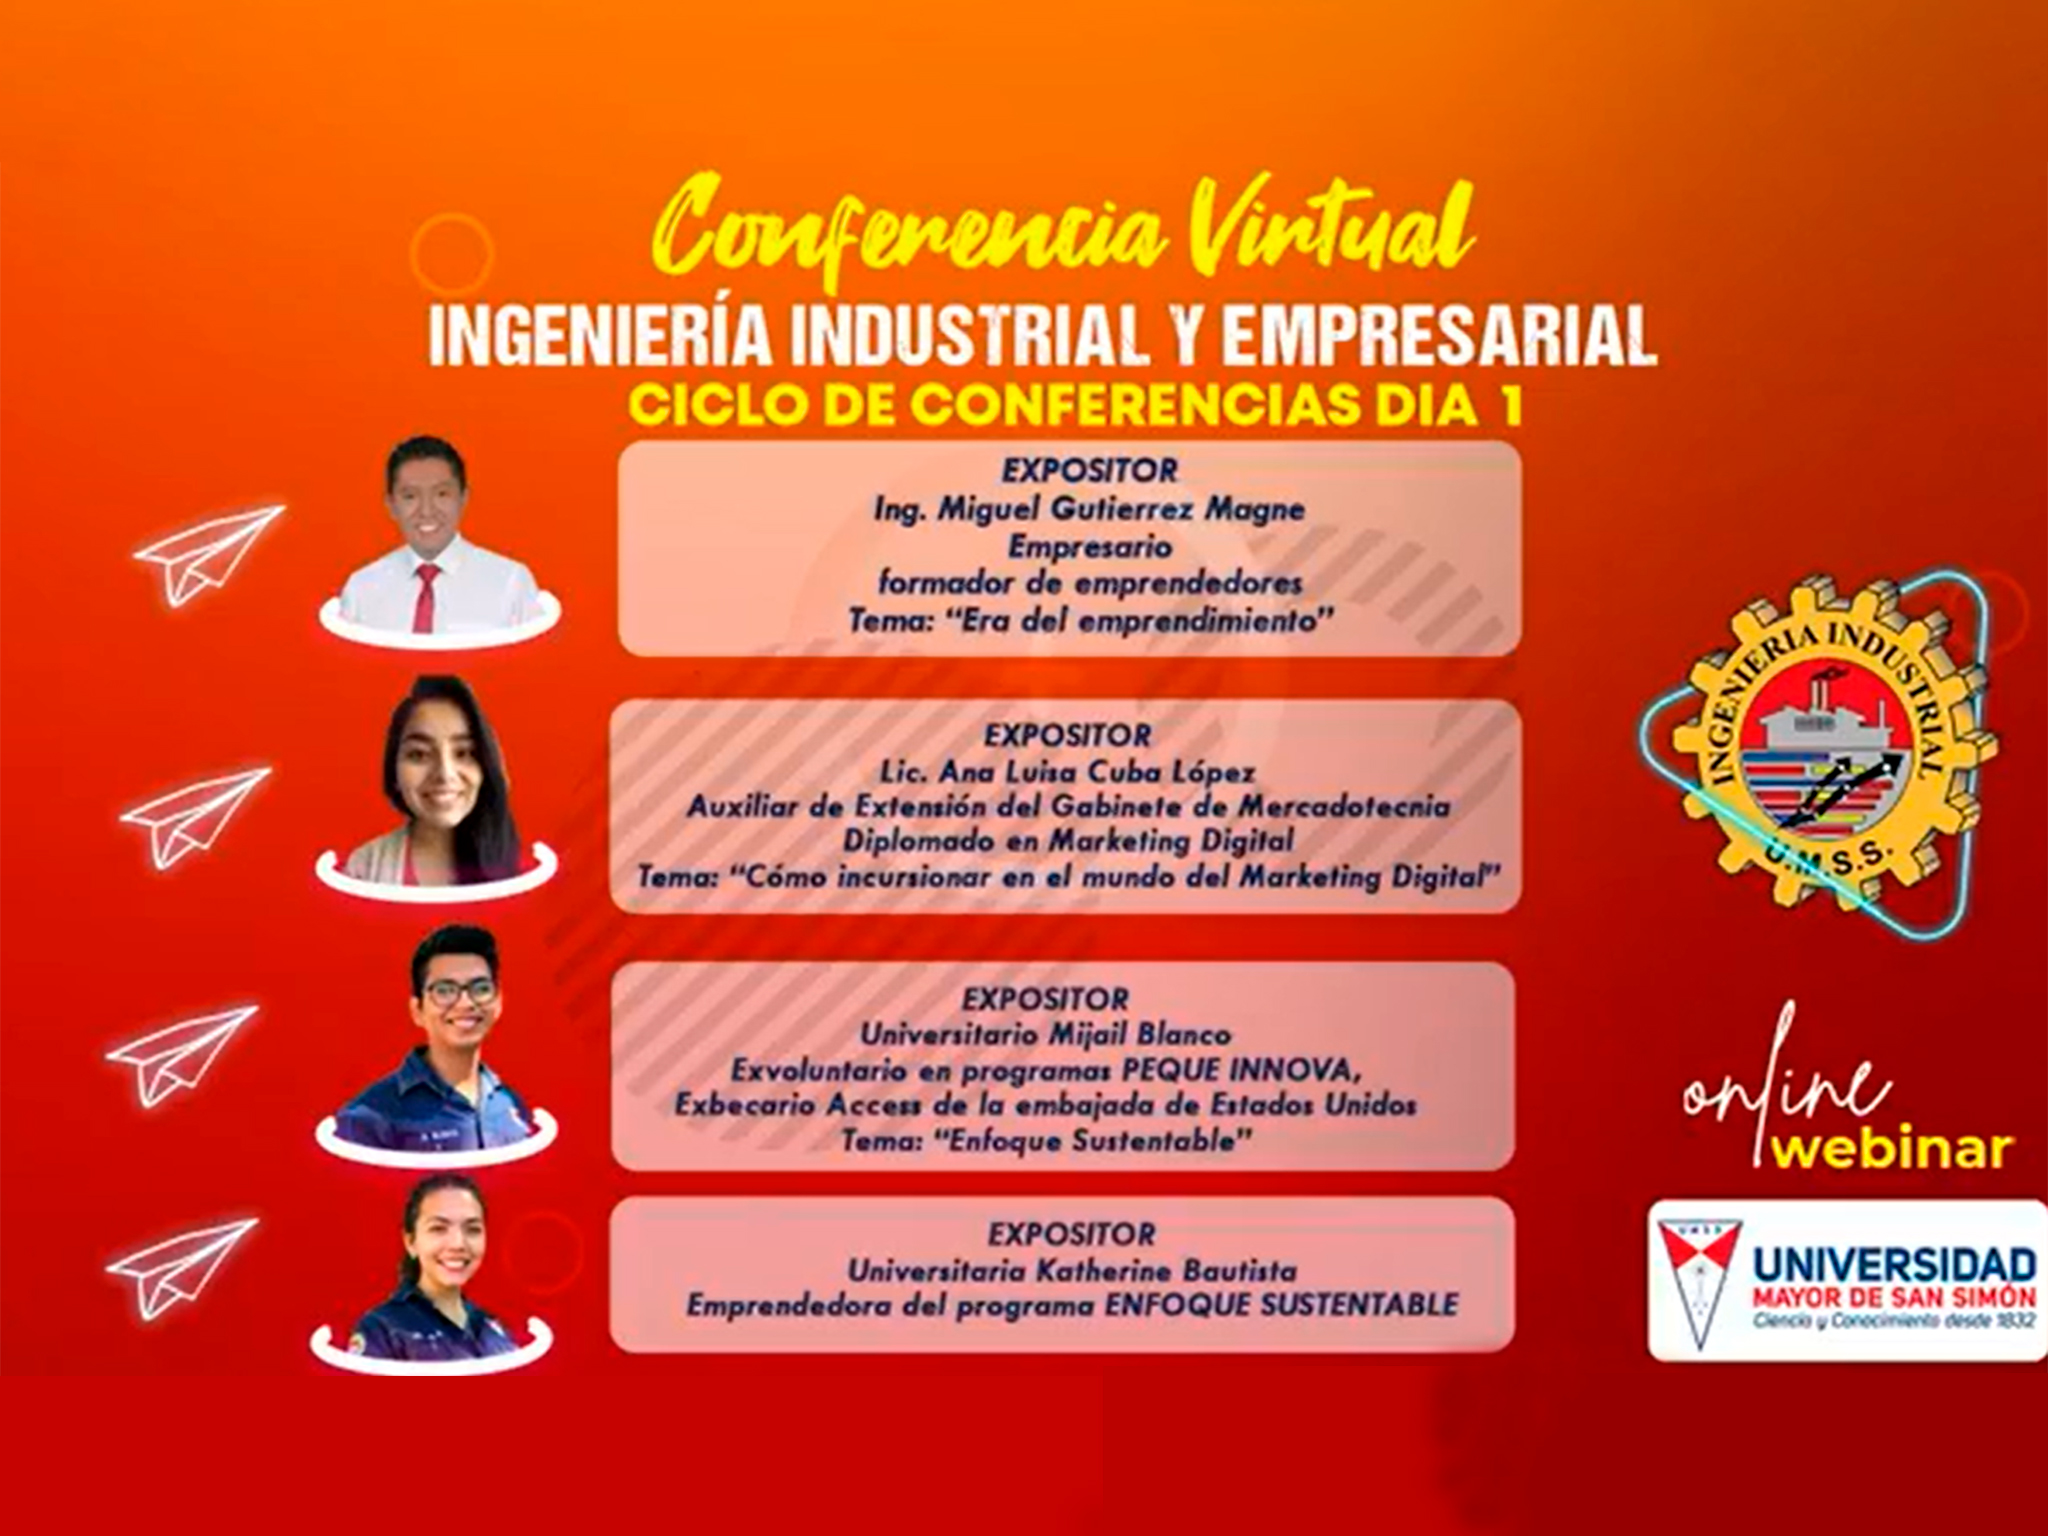 Ciclo de Conferencias Virtuales - Ingeniería Industrial y Empresarial Día 1